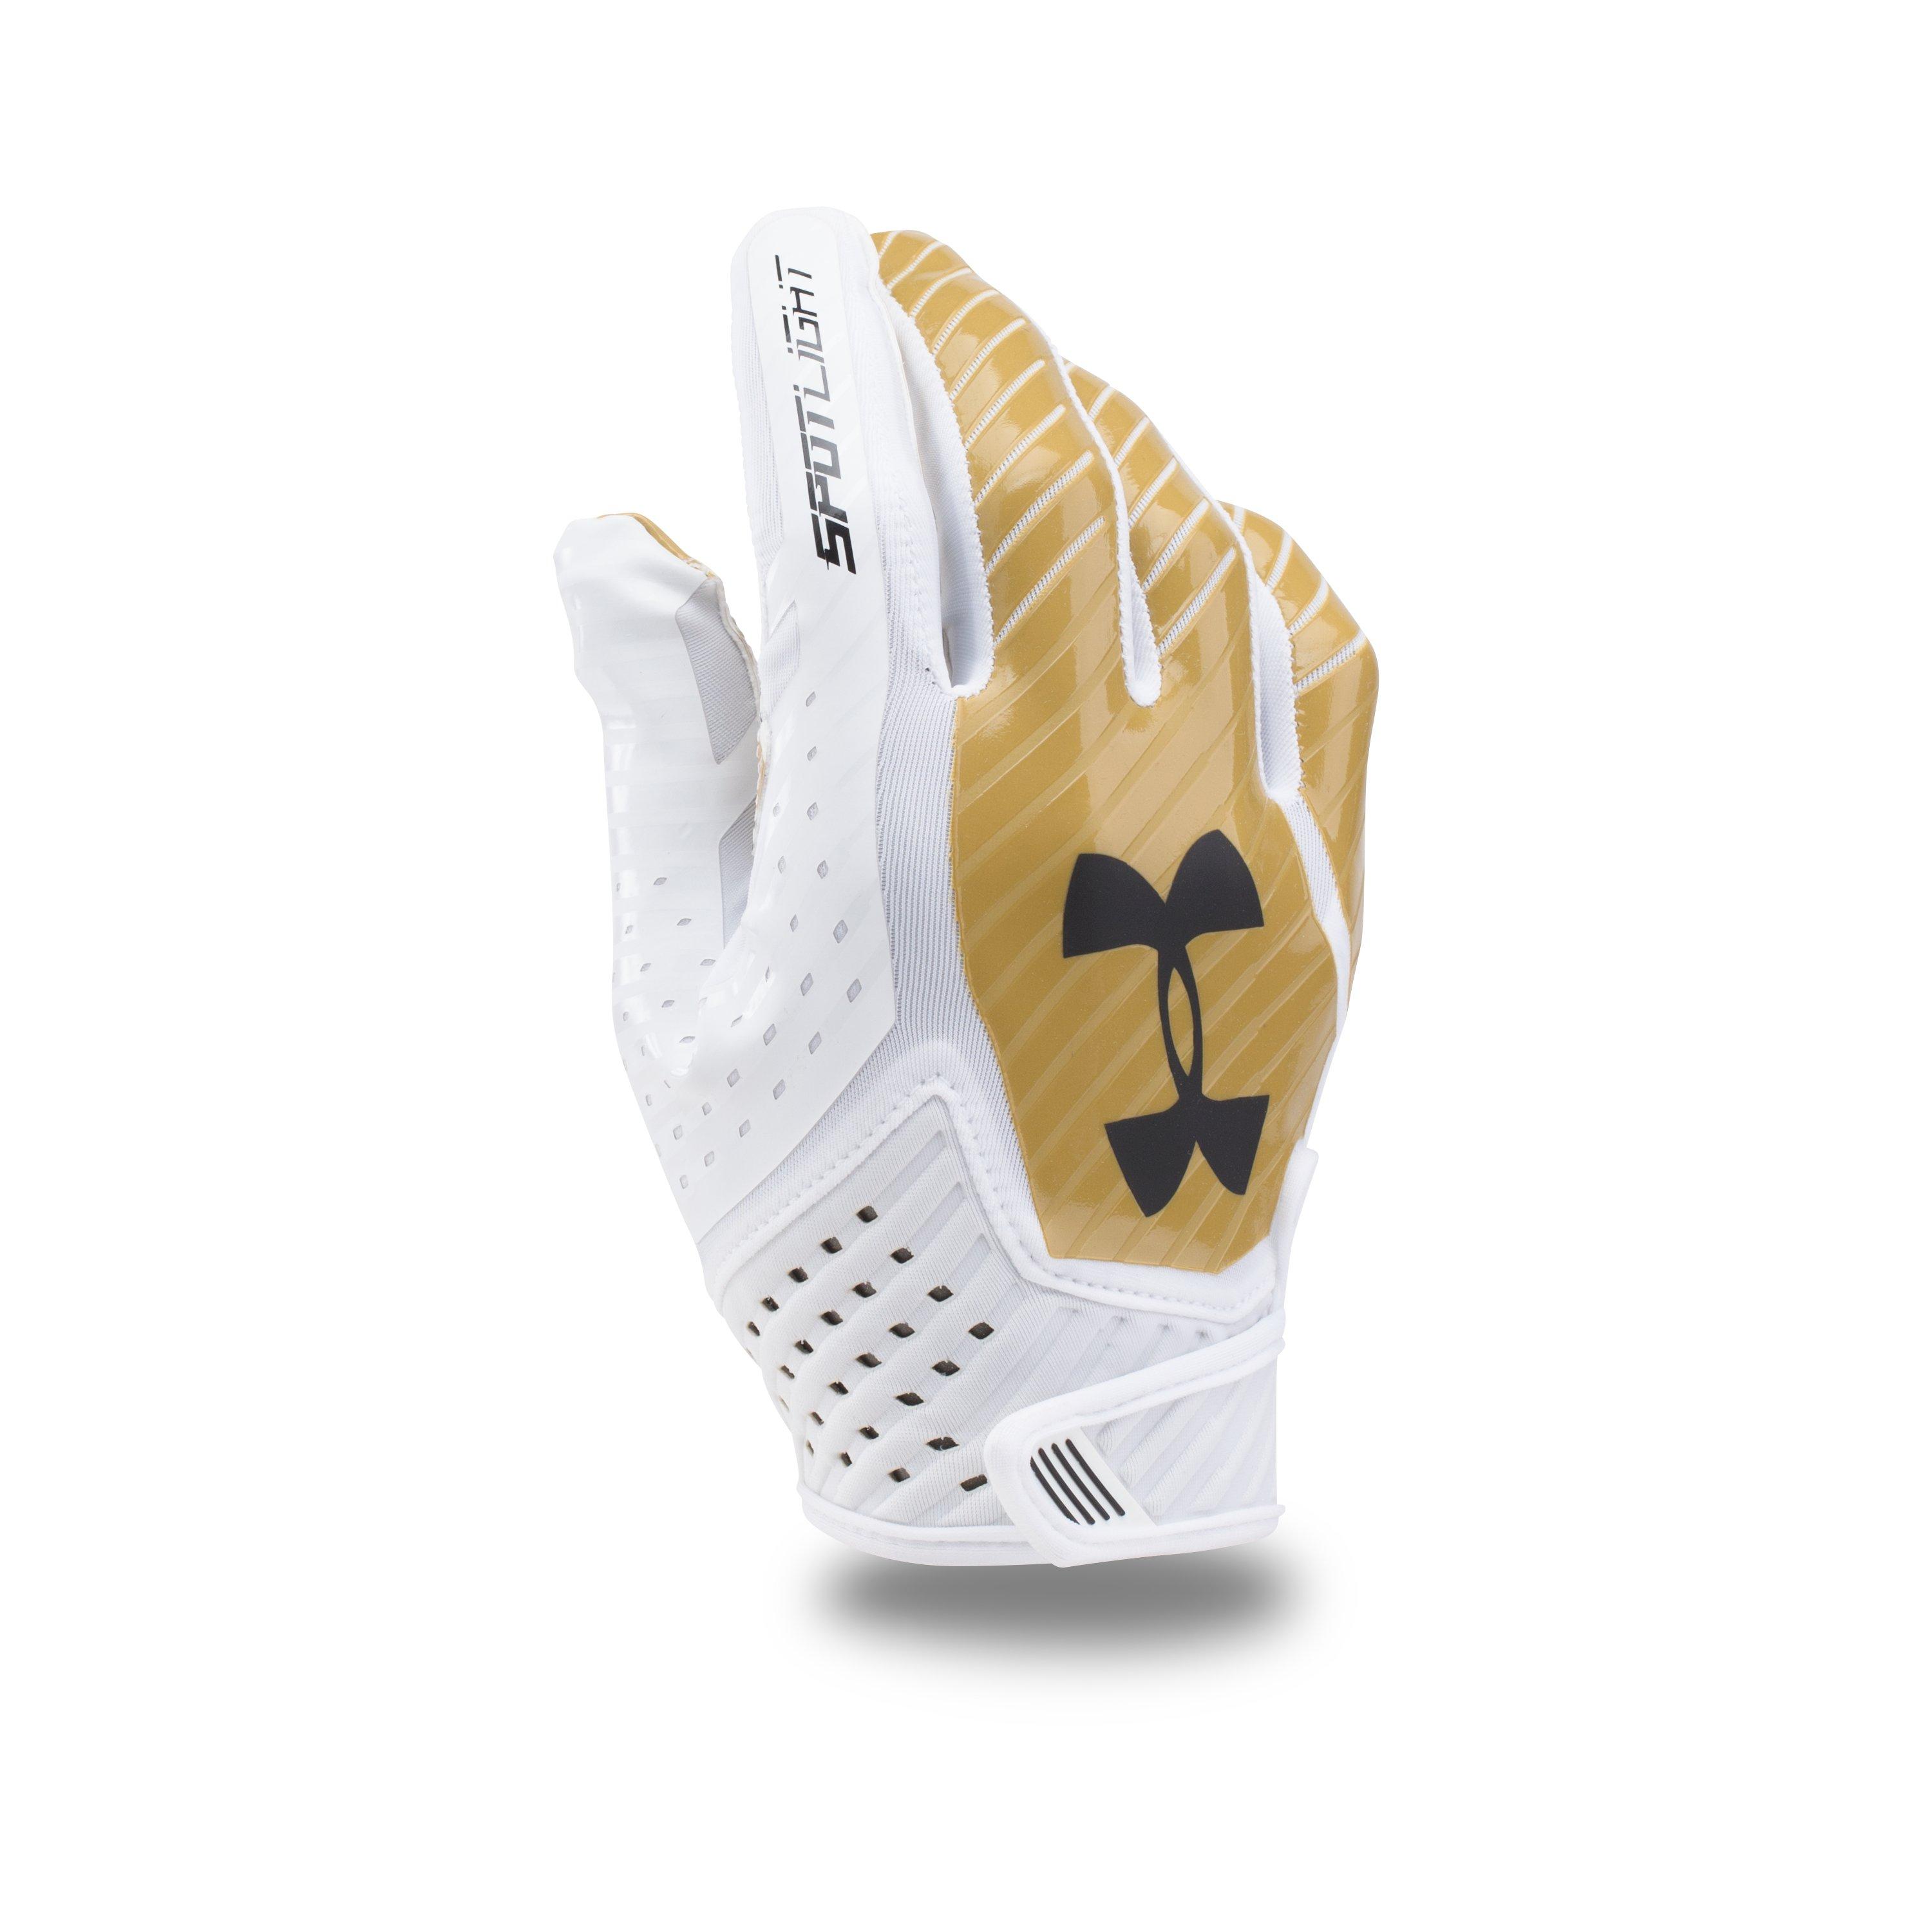 Under Armour Neoprene Men's Ua Spotlight Football Gloves in White/Metallic  Gold (Metallic) for Men - Lyst